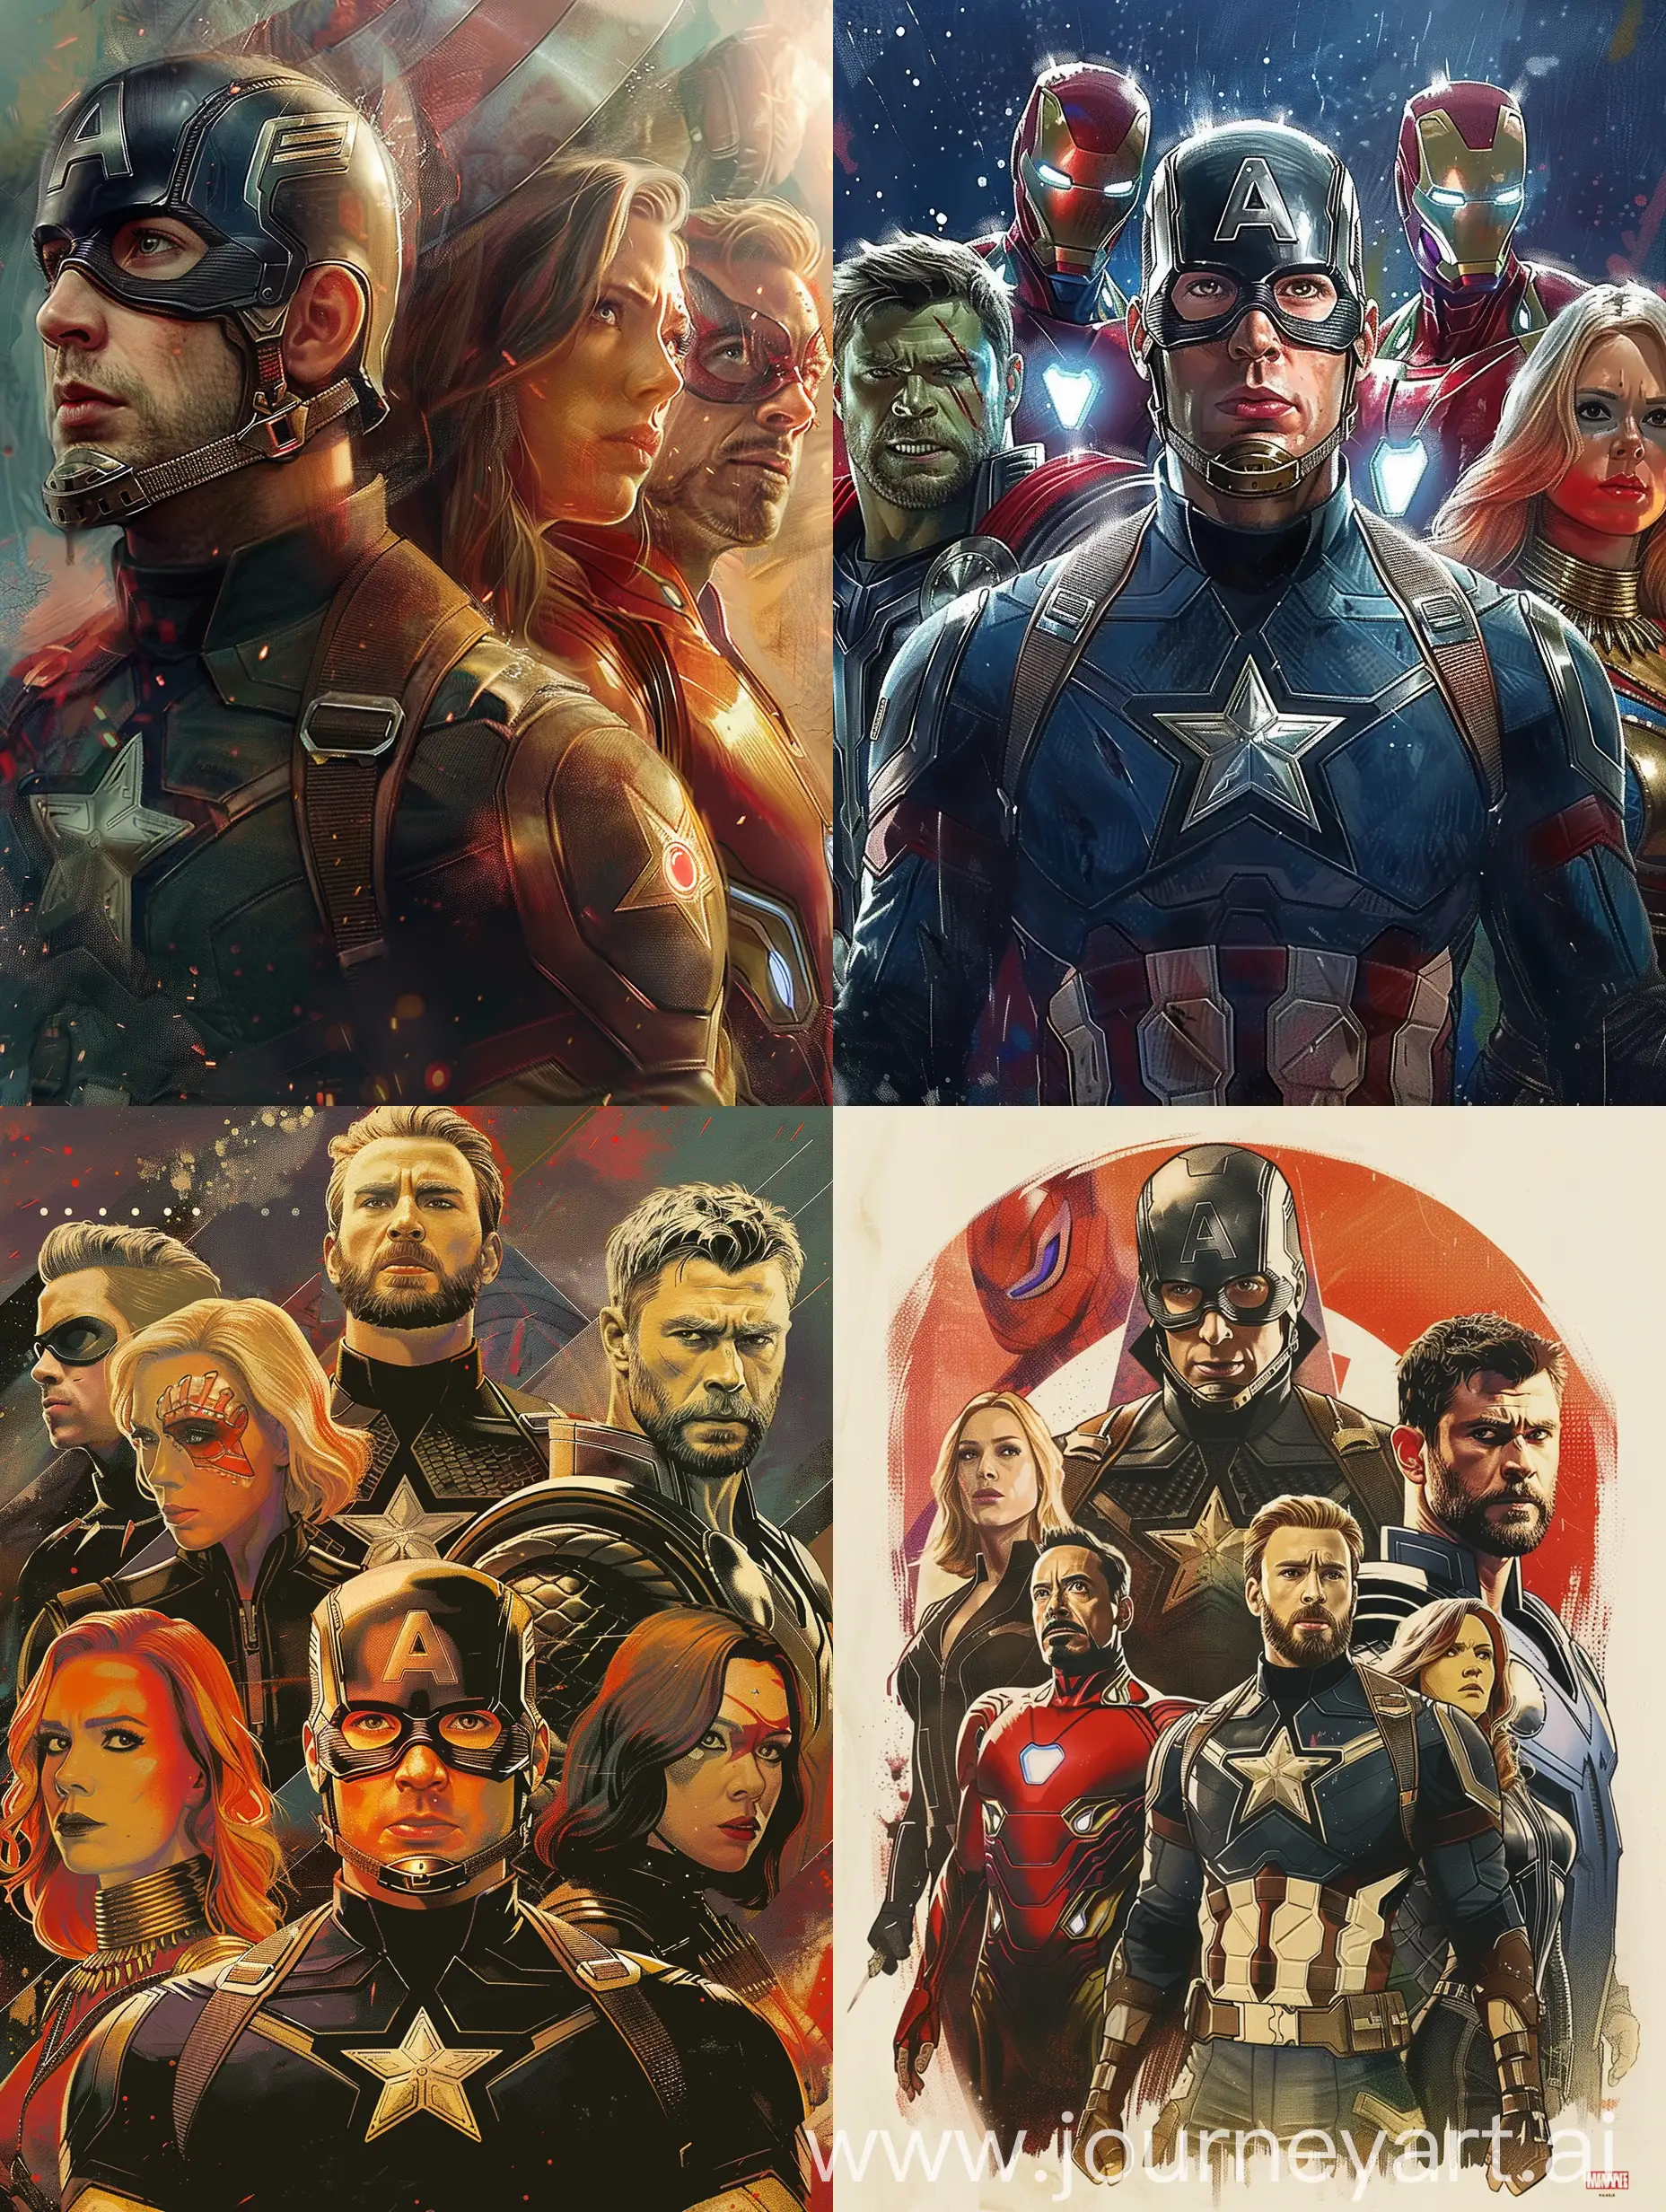 Epic-Battle-Scene-Avengers-in-Secret-Wars-2026